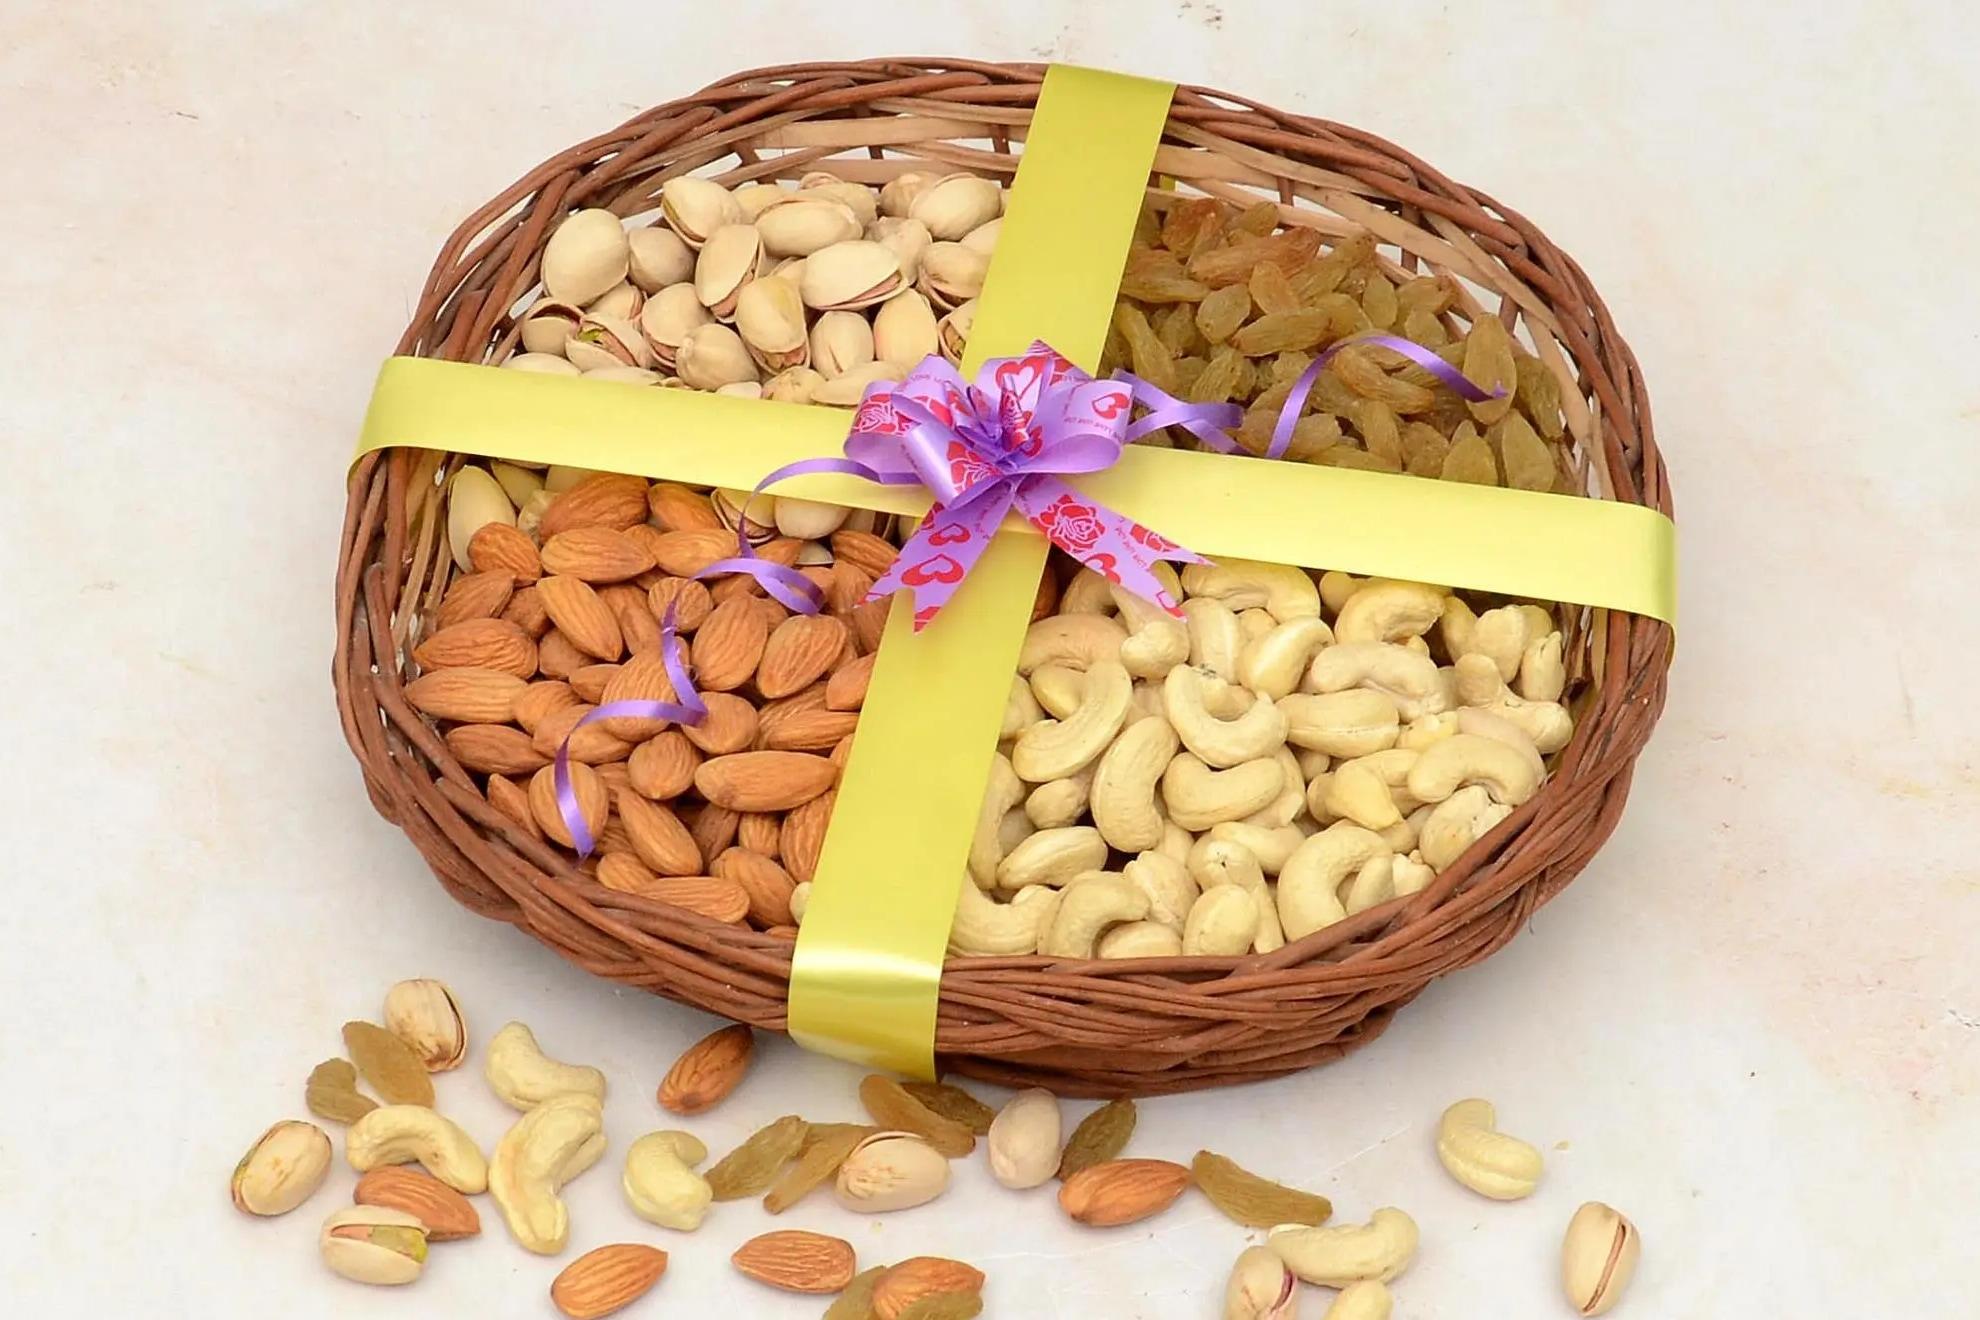 Buy Jaiccha Ghasitaram Gifts-Lohri Gifts Sweets- Complete Lohri Basket  Online at Best Prices in India - JioMart.